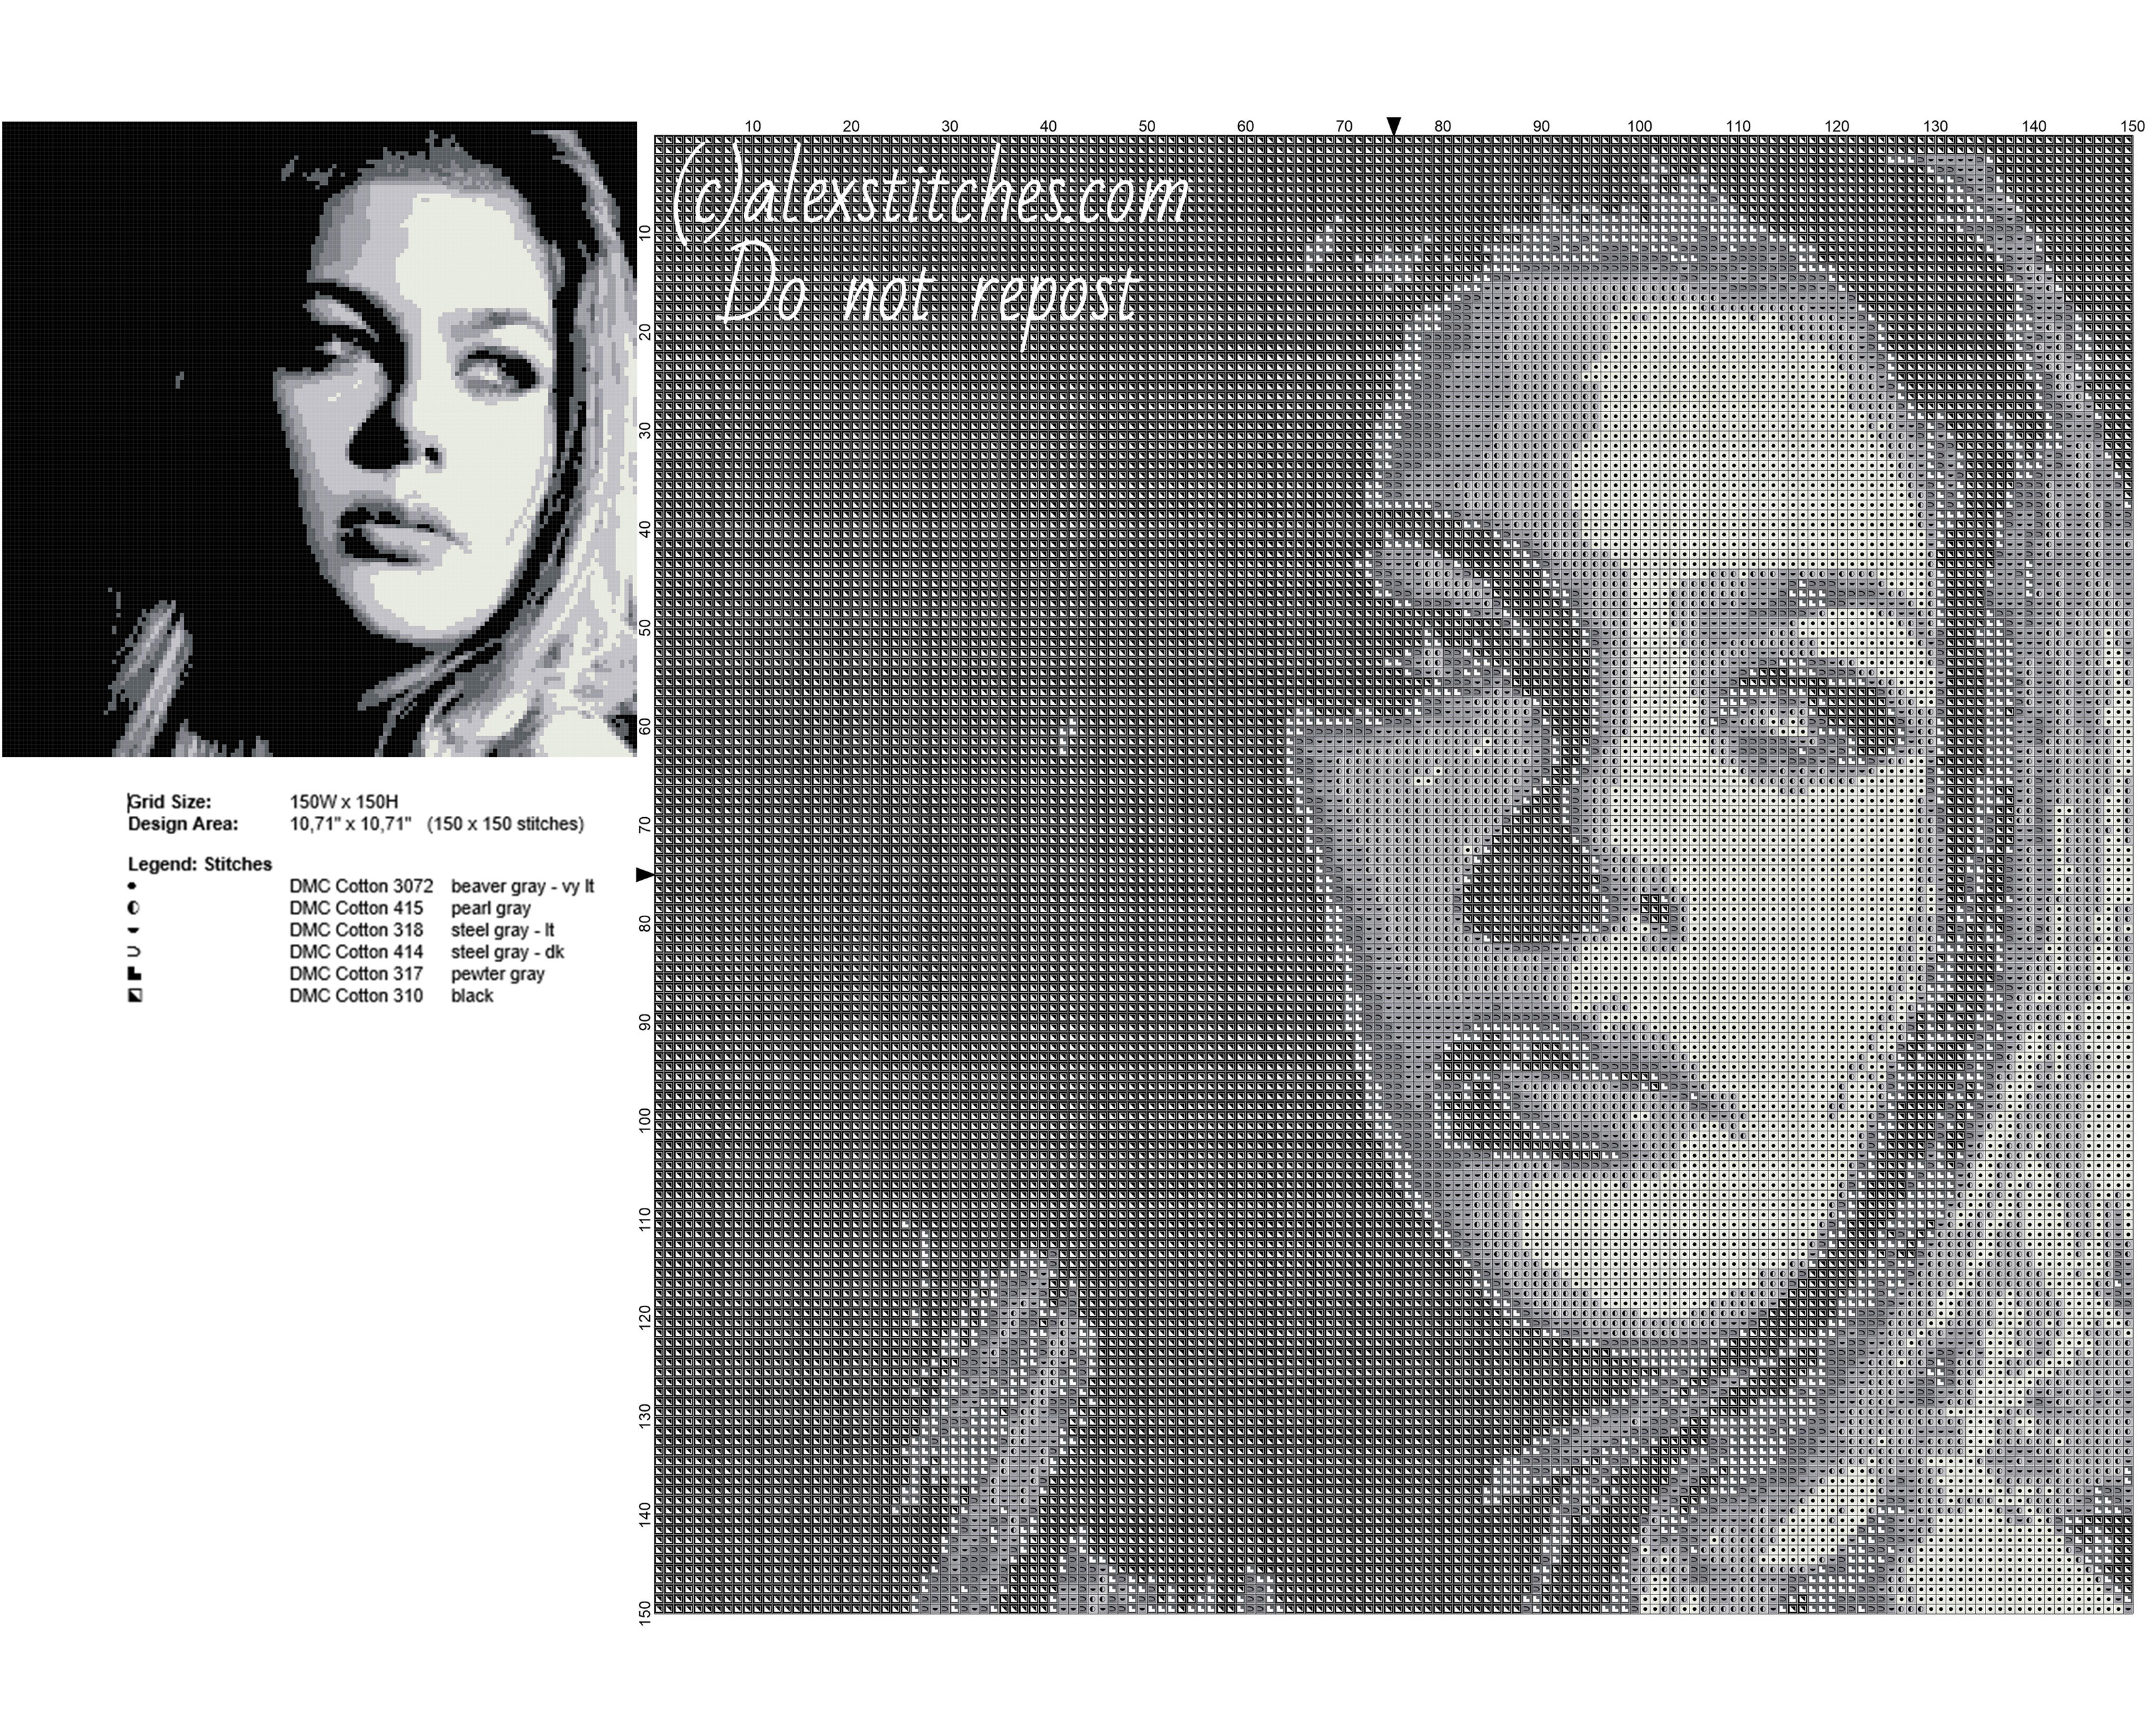 Louane Emera french actress free cross stitch pattern 150 x 150 6 DMC threads